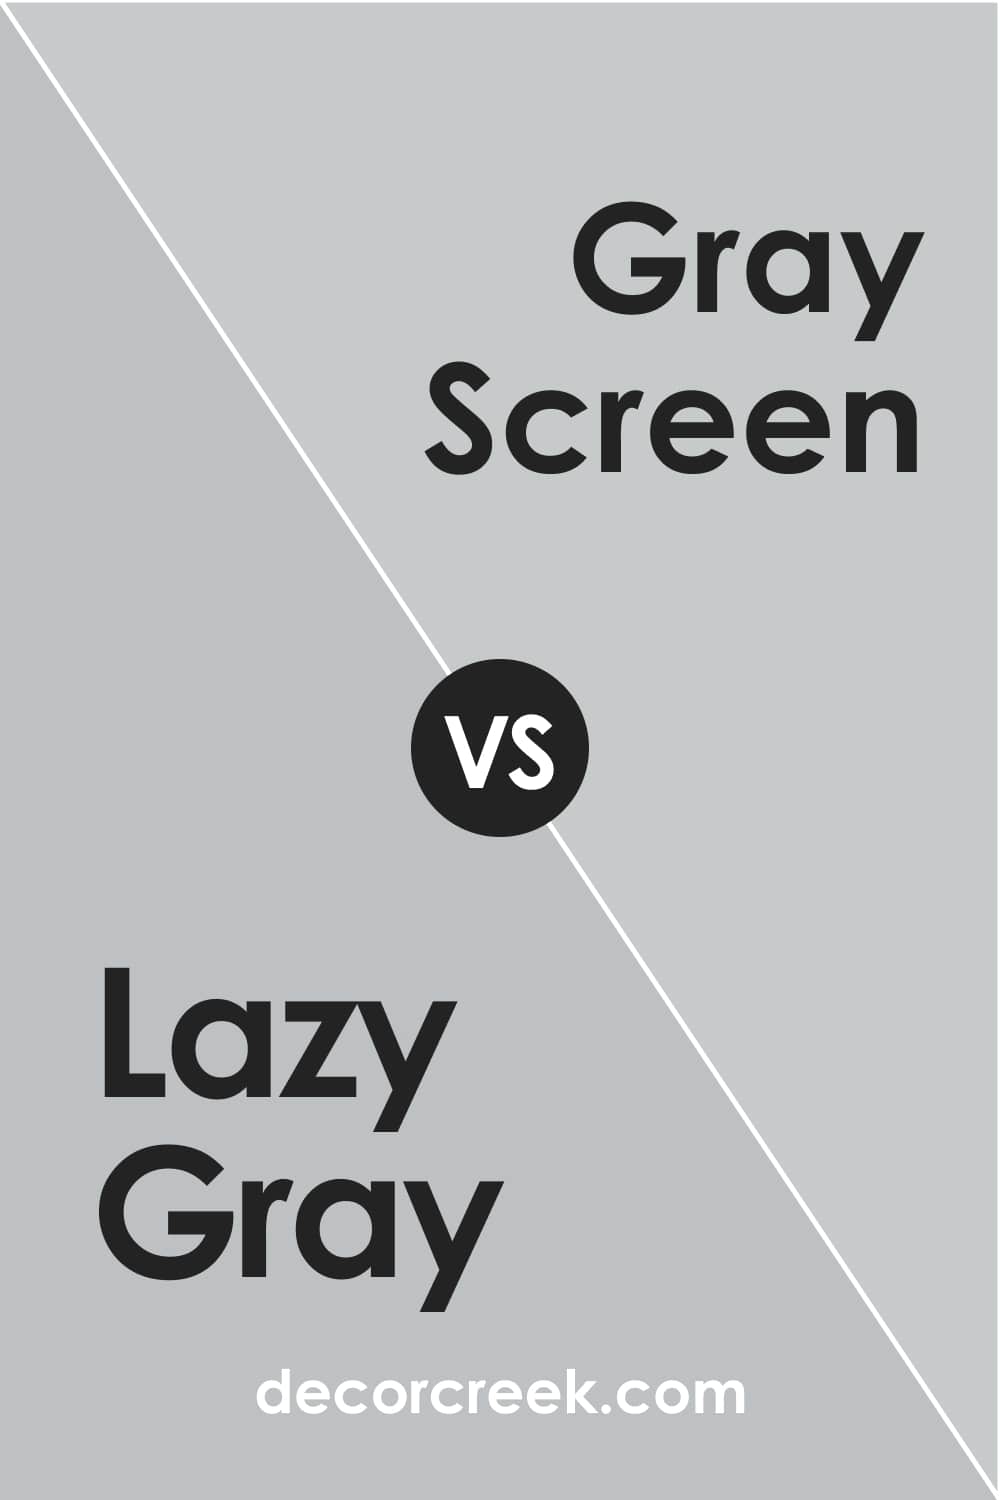 Lazy Gray vs. Gray Screen